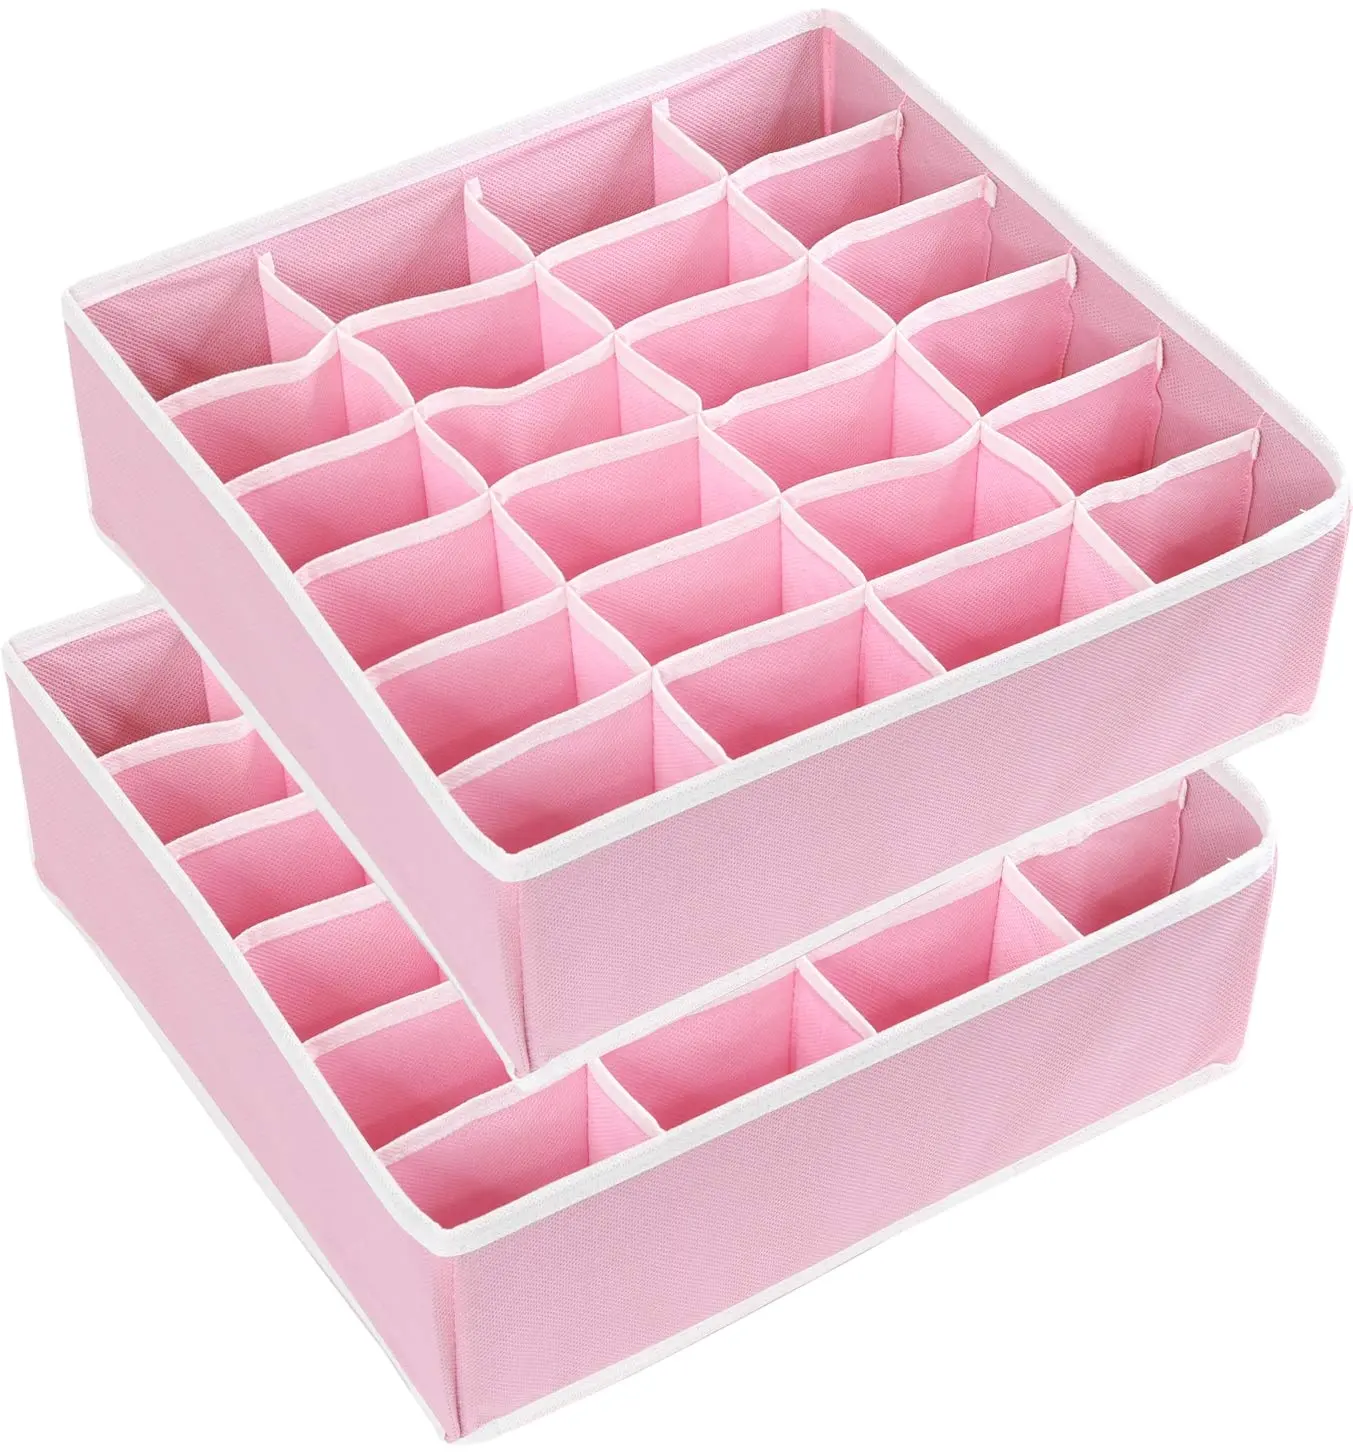 24 Cell Multi-function Stackable Socks Underwear Drawer Organizer Divider Closet Bra Organizer Storage Box